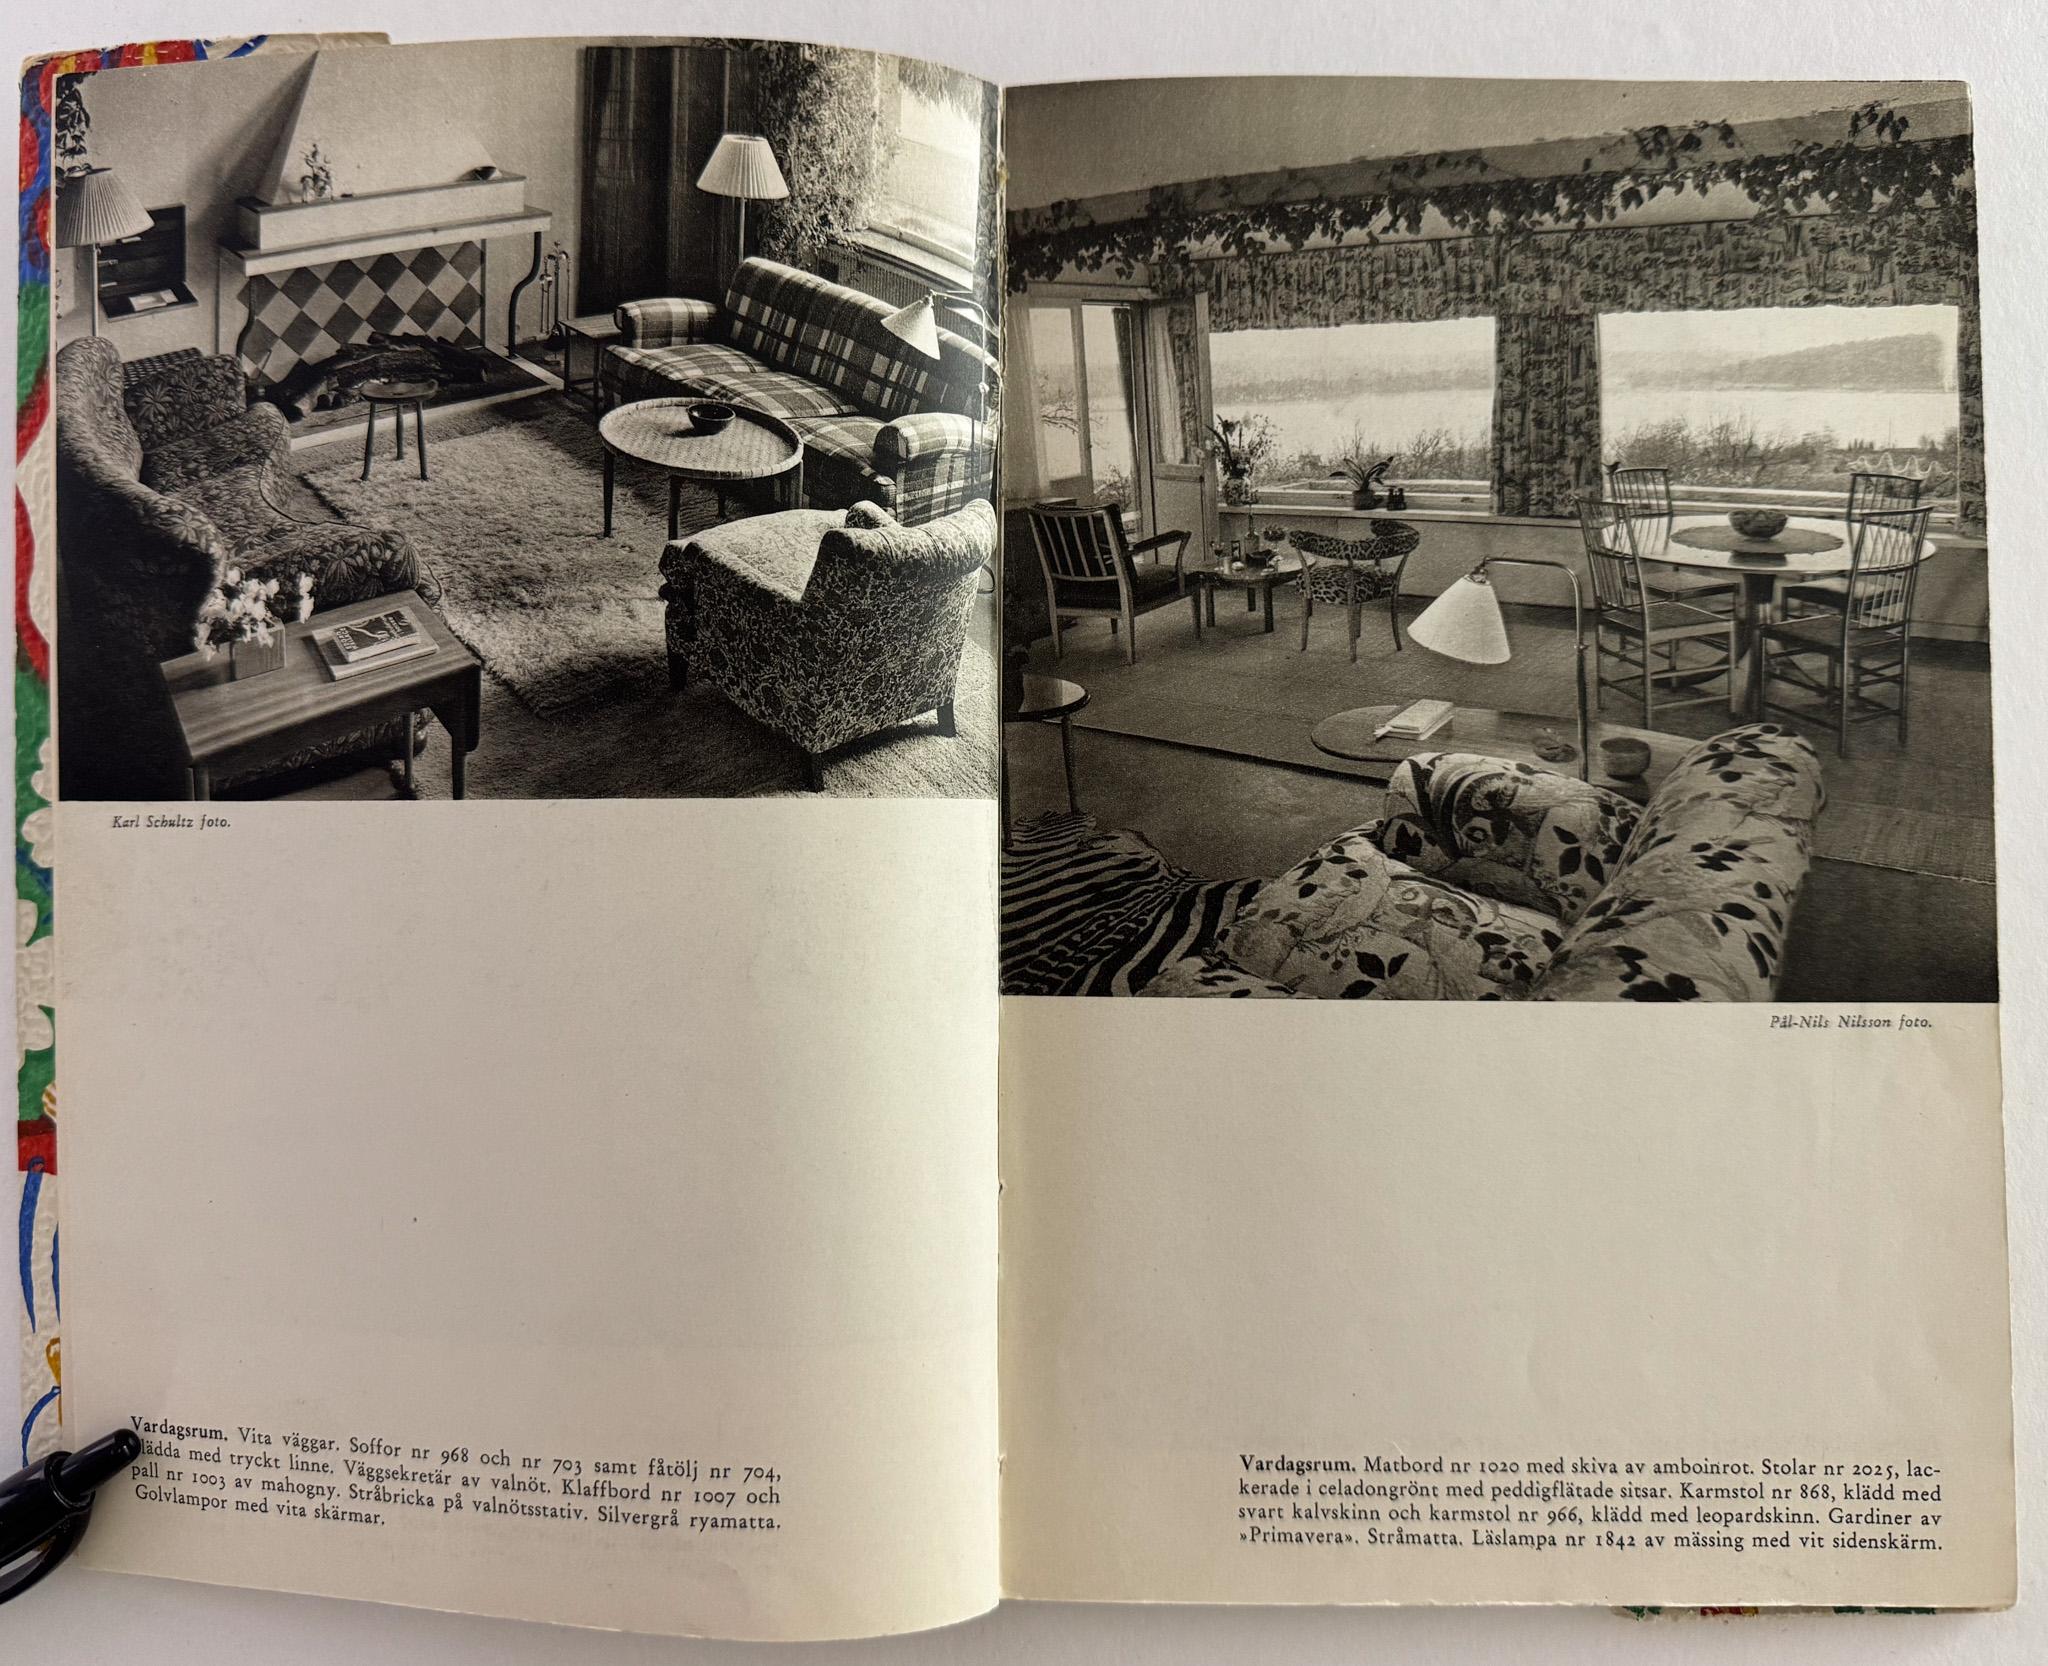 Catalogue de Svenskt Tenn présentant les meubles, les luminaires, les textiles et les papiers peints aux imprimés botaniques de l'architecte/designer Josef Frank. Publié au début des années 1950, le catalogue présente l'utilisation expressive par